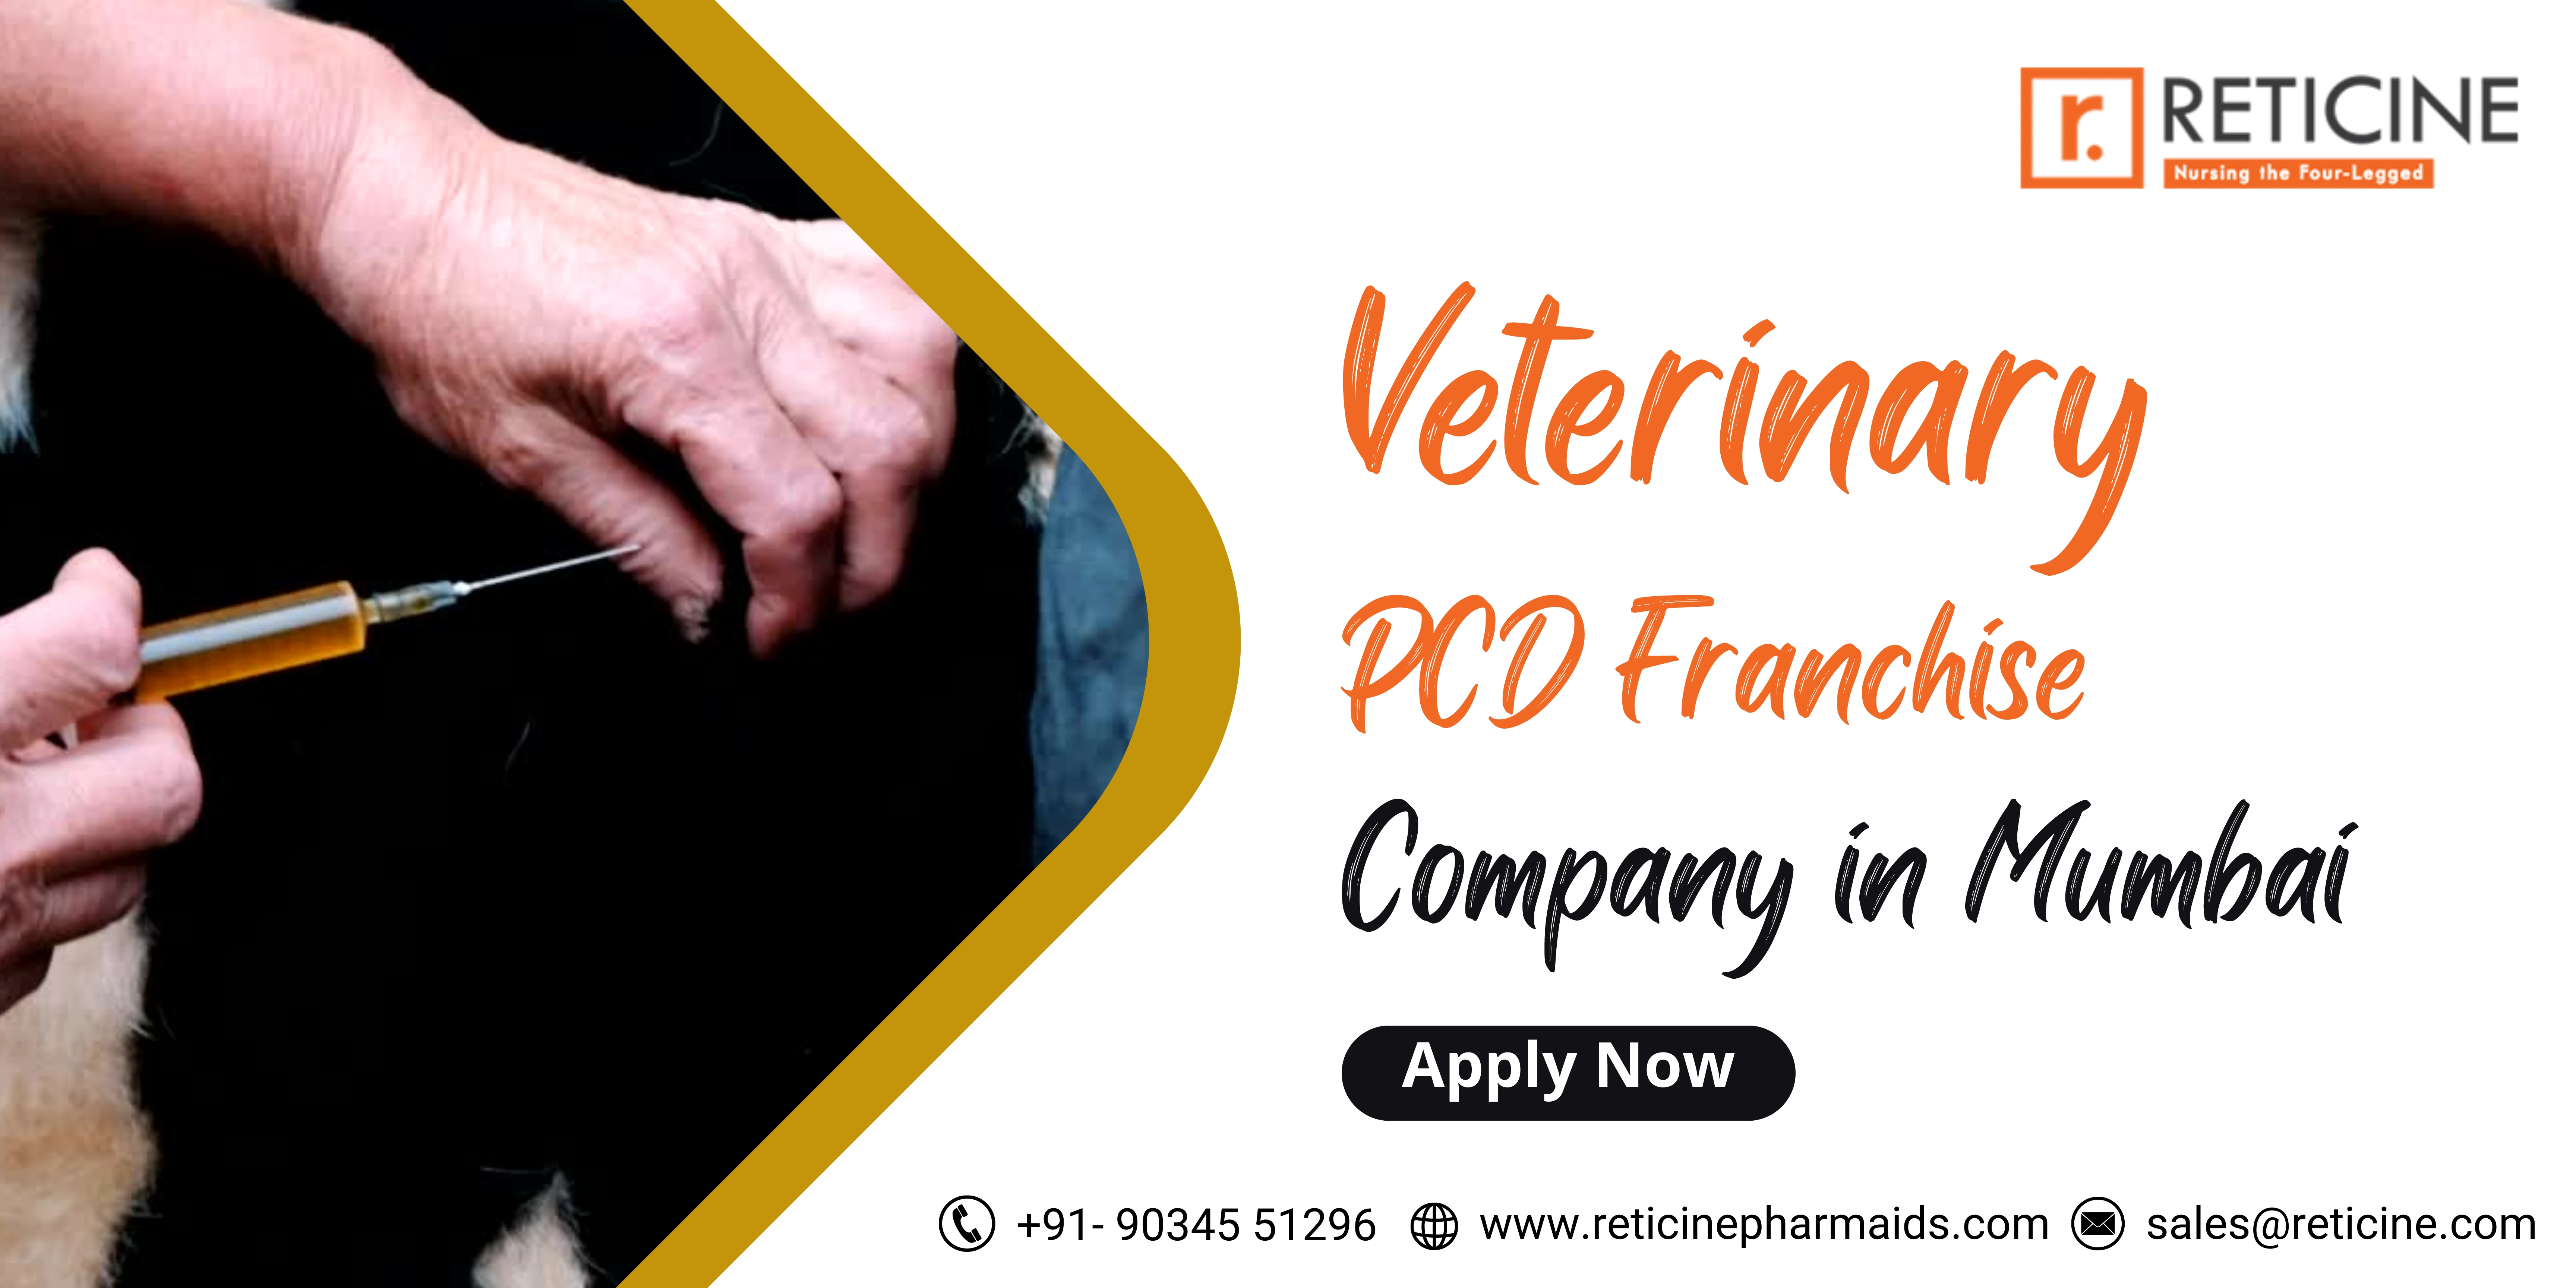 Veterinary PCD Franchise Company in Mumbai